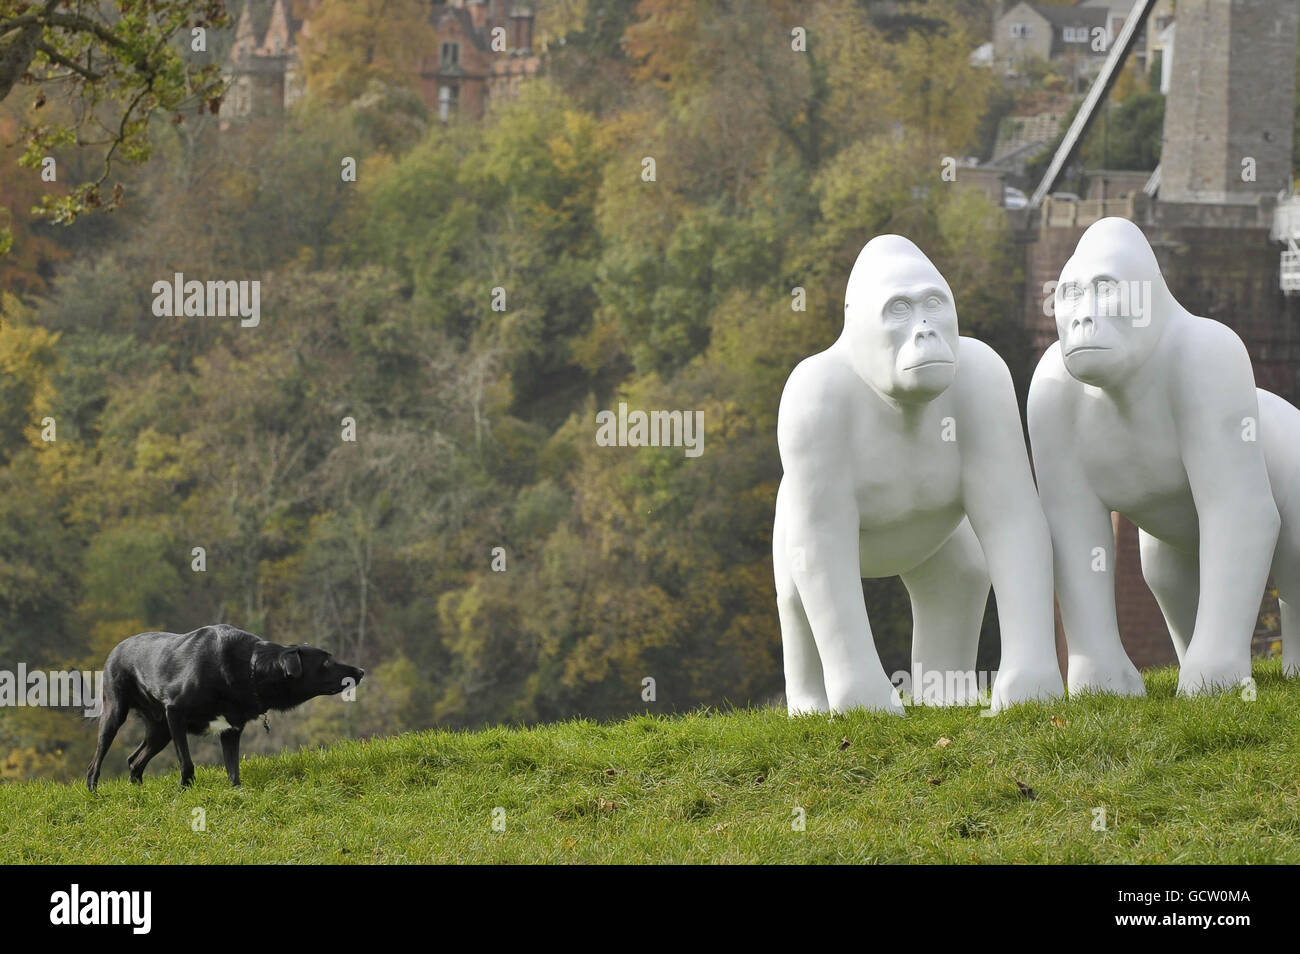 Un chien approche de façon épieuse une série de sculptures de gorille grandeur nature à côté du pont suspendu de Clifton dans le cadre d'un grand événement d'art public pour célébrer le 175e anniversaire de Bristol ZooGardens. Banque D'Images